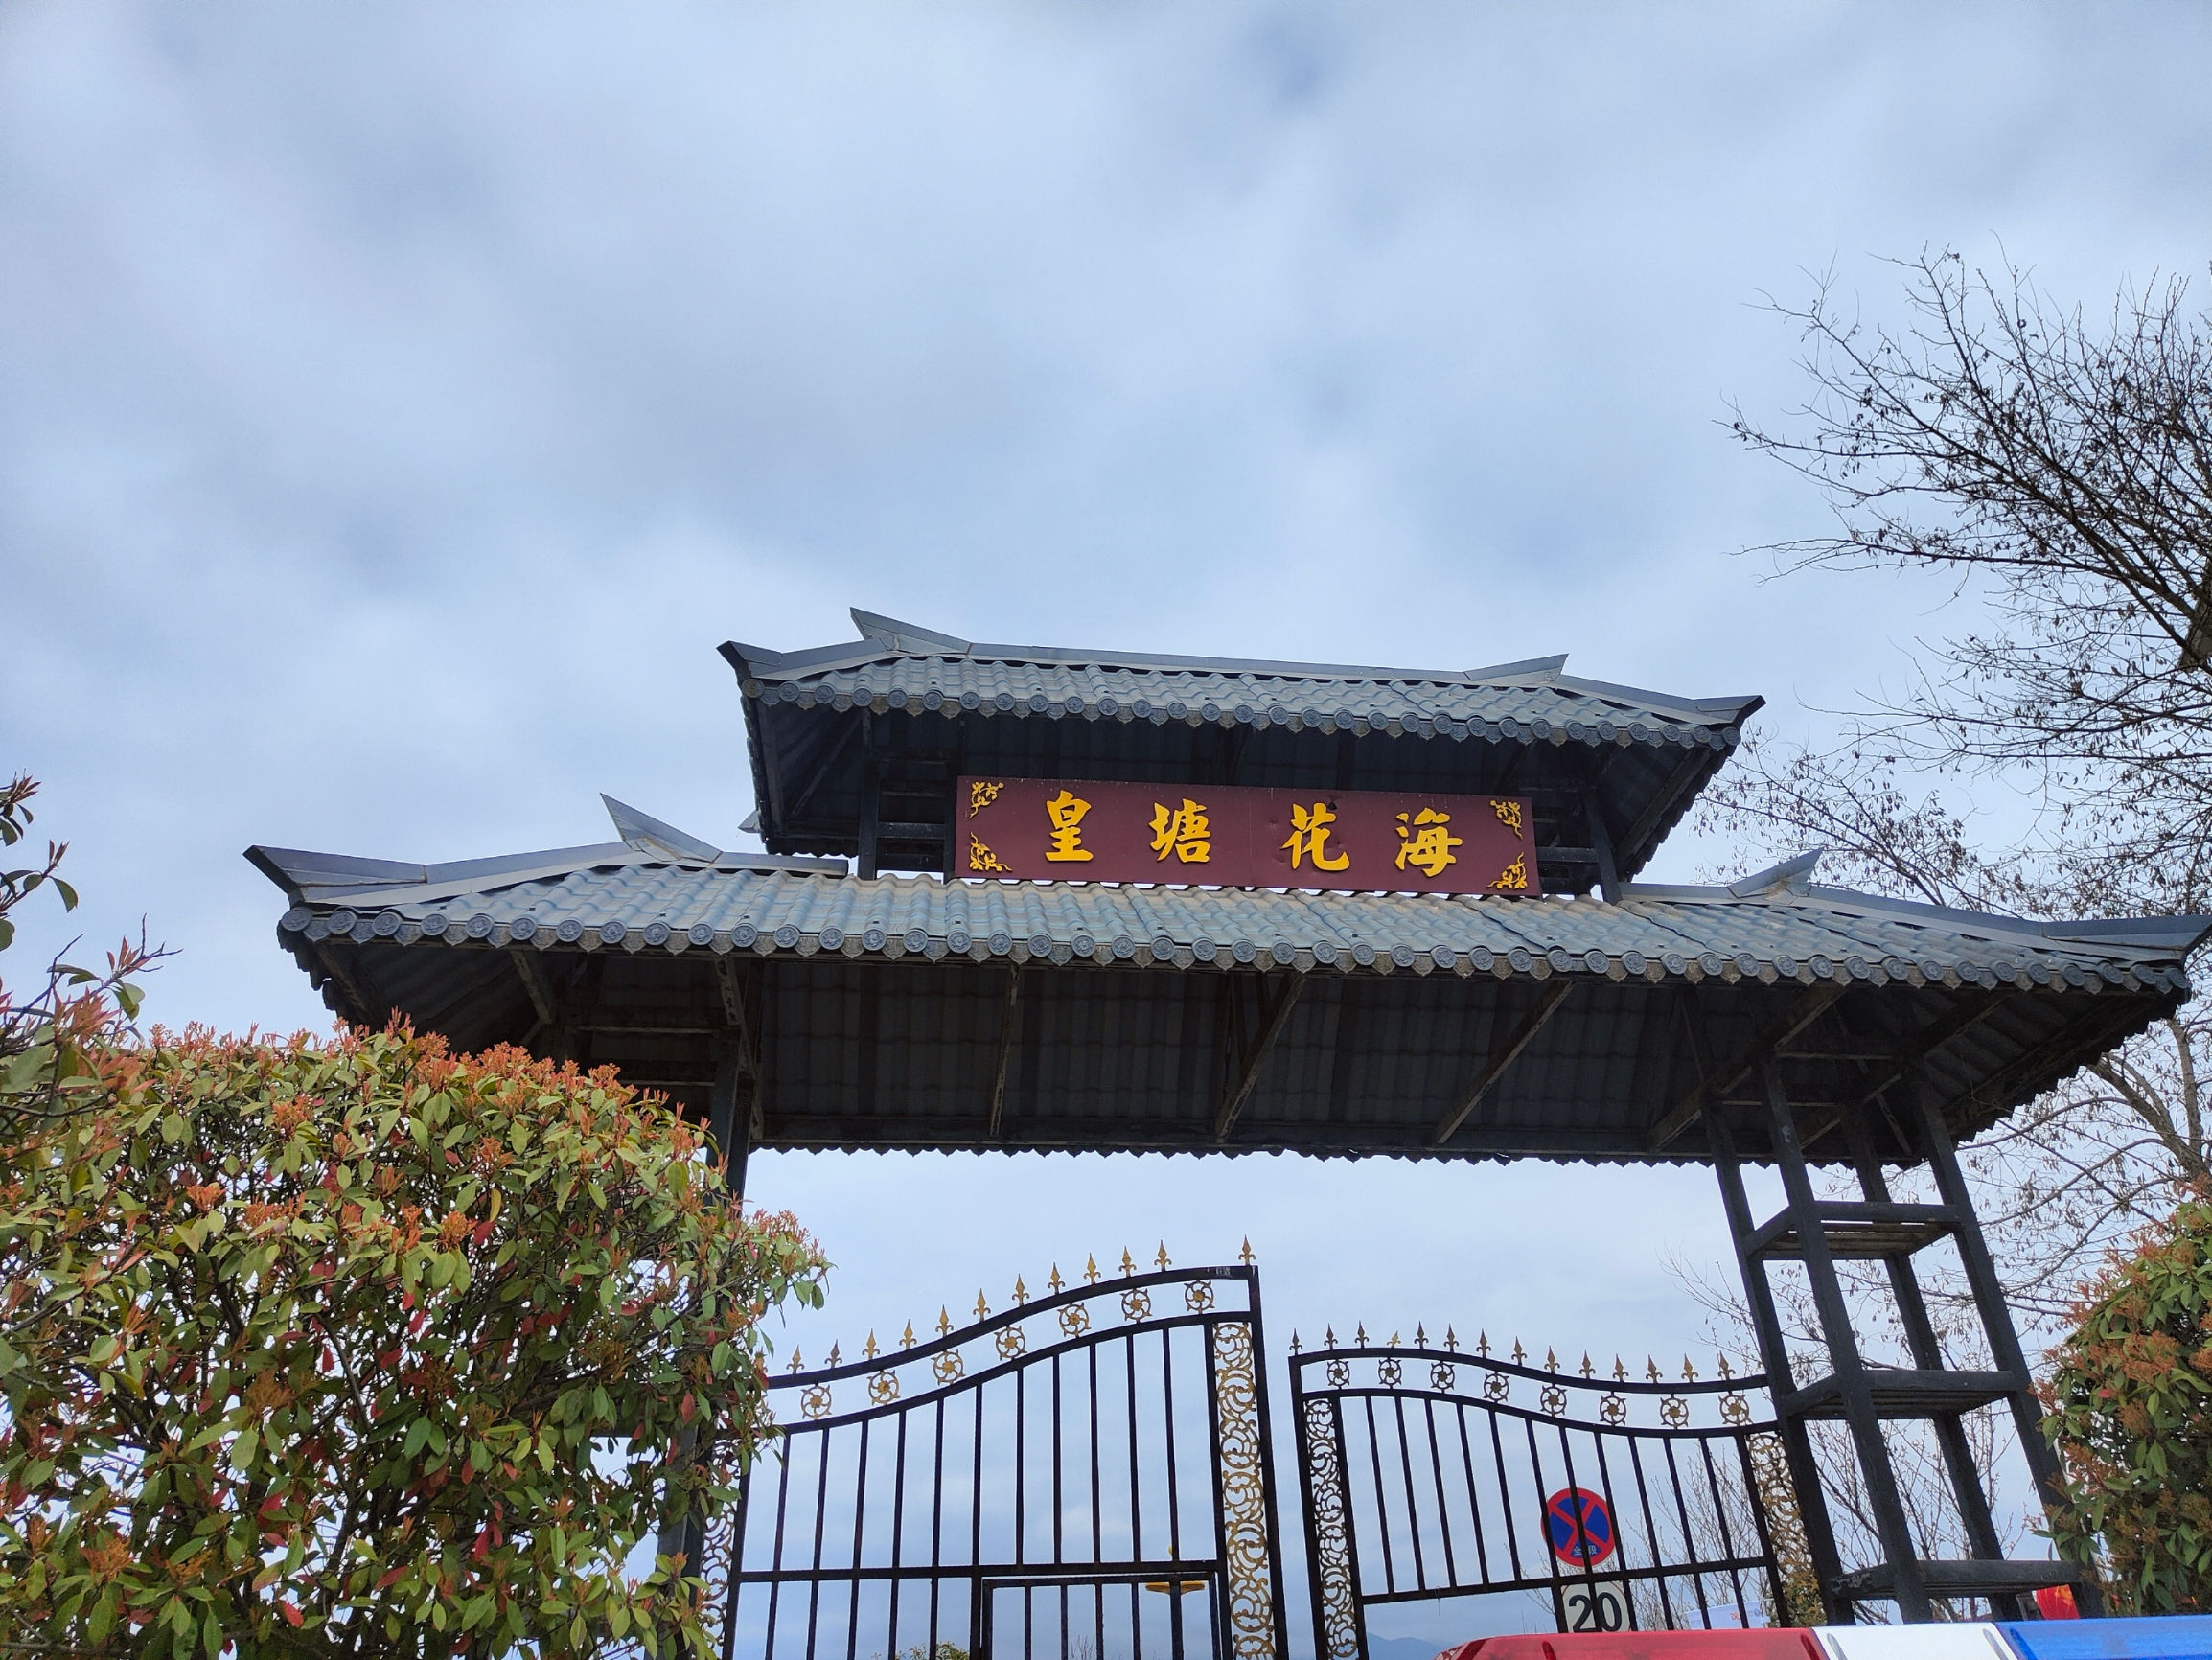 汉中市汉台区老君镇乡村文化田园，是汉台区每年油菜花海旅游节的主会场，由以皇塘花海最为知名，每年进入3